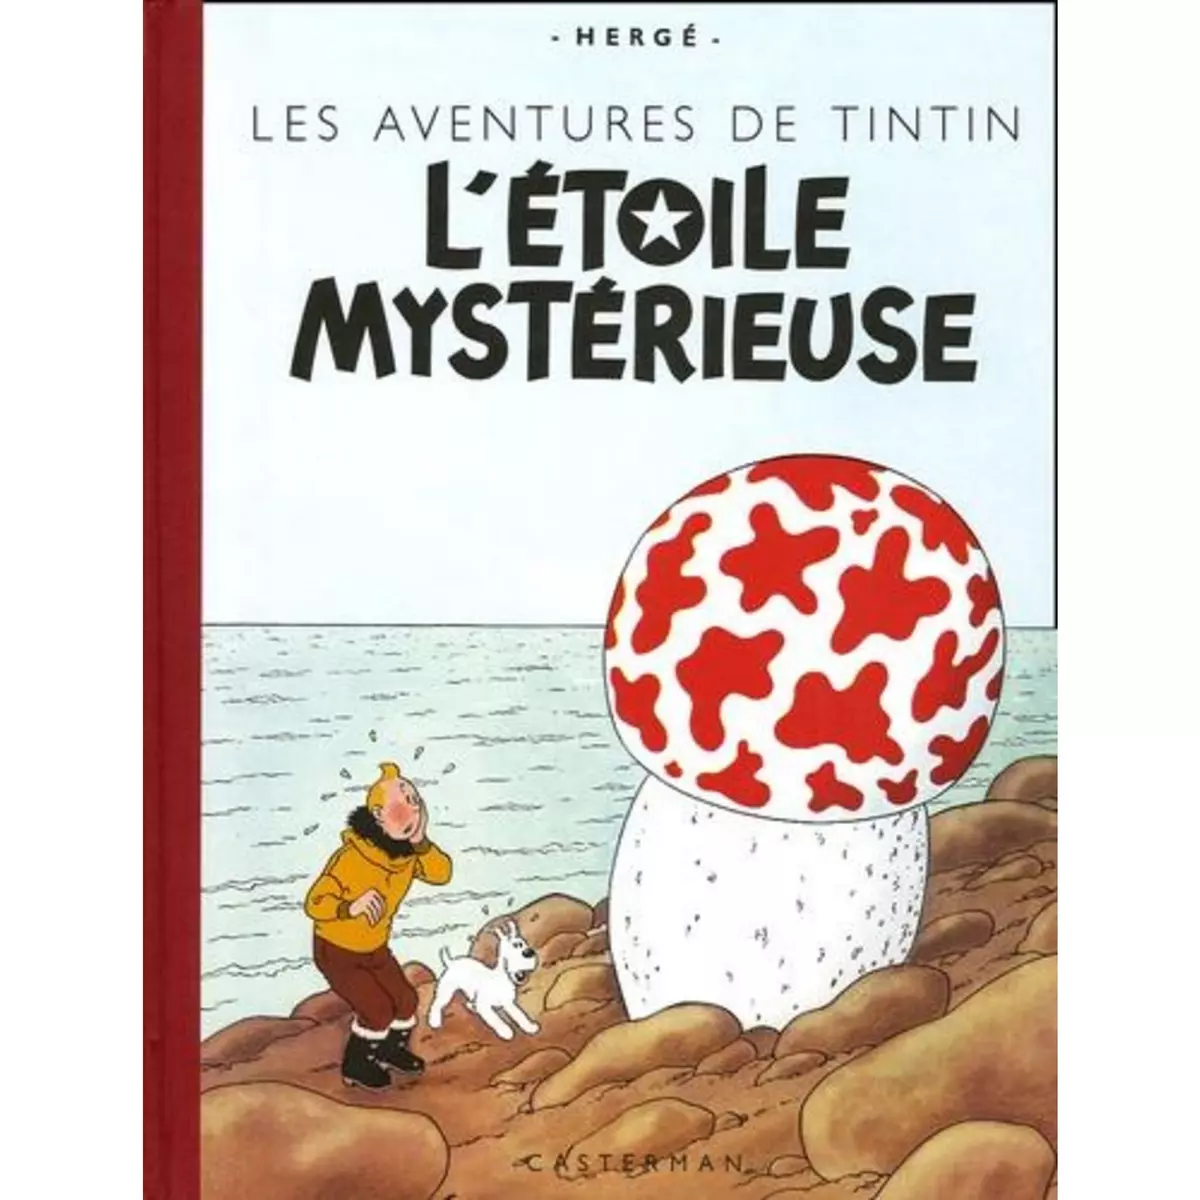  LES AVENTURES DE TINTIN : L'ETOILE MYSTERIEUSE. EDITION FAC-SIMILE EN COULEURS, Hergé